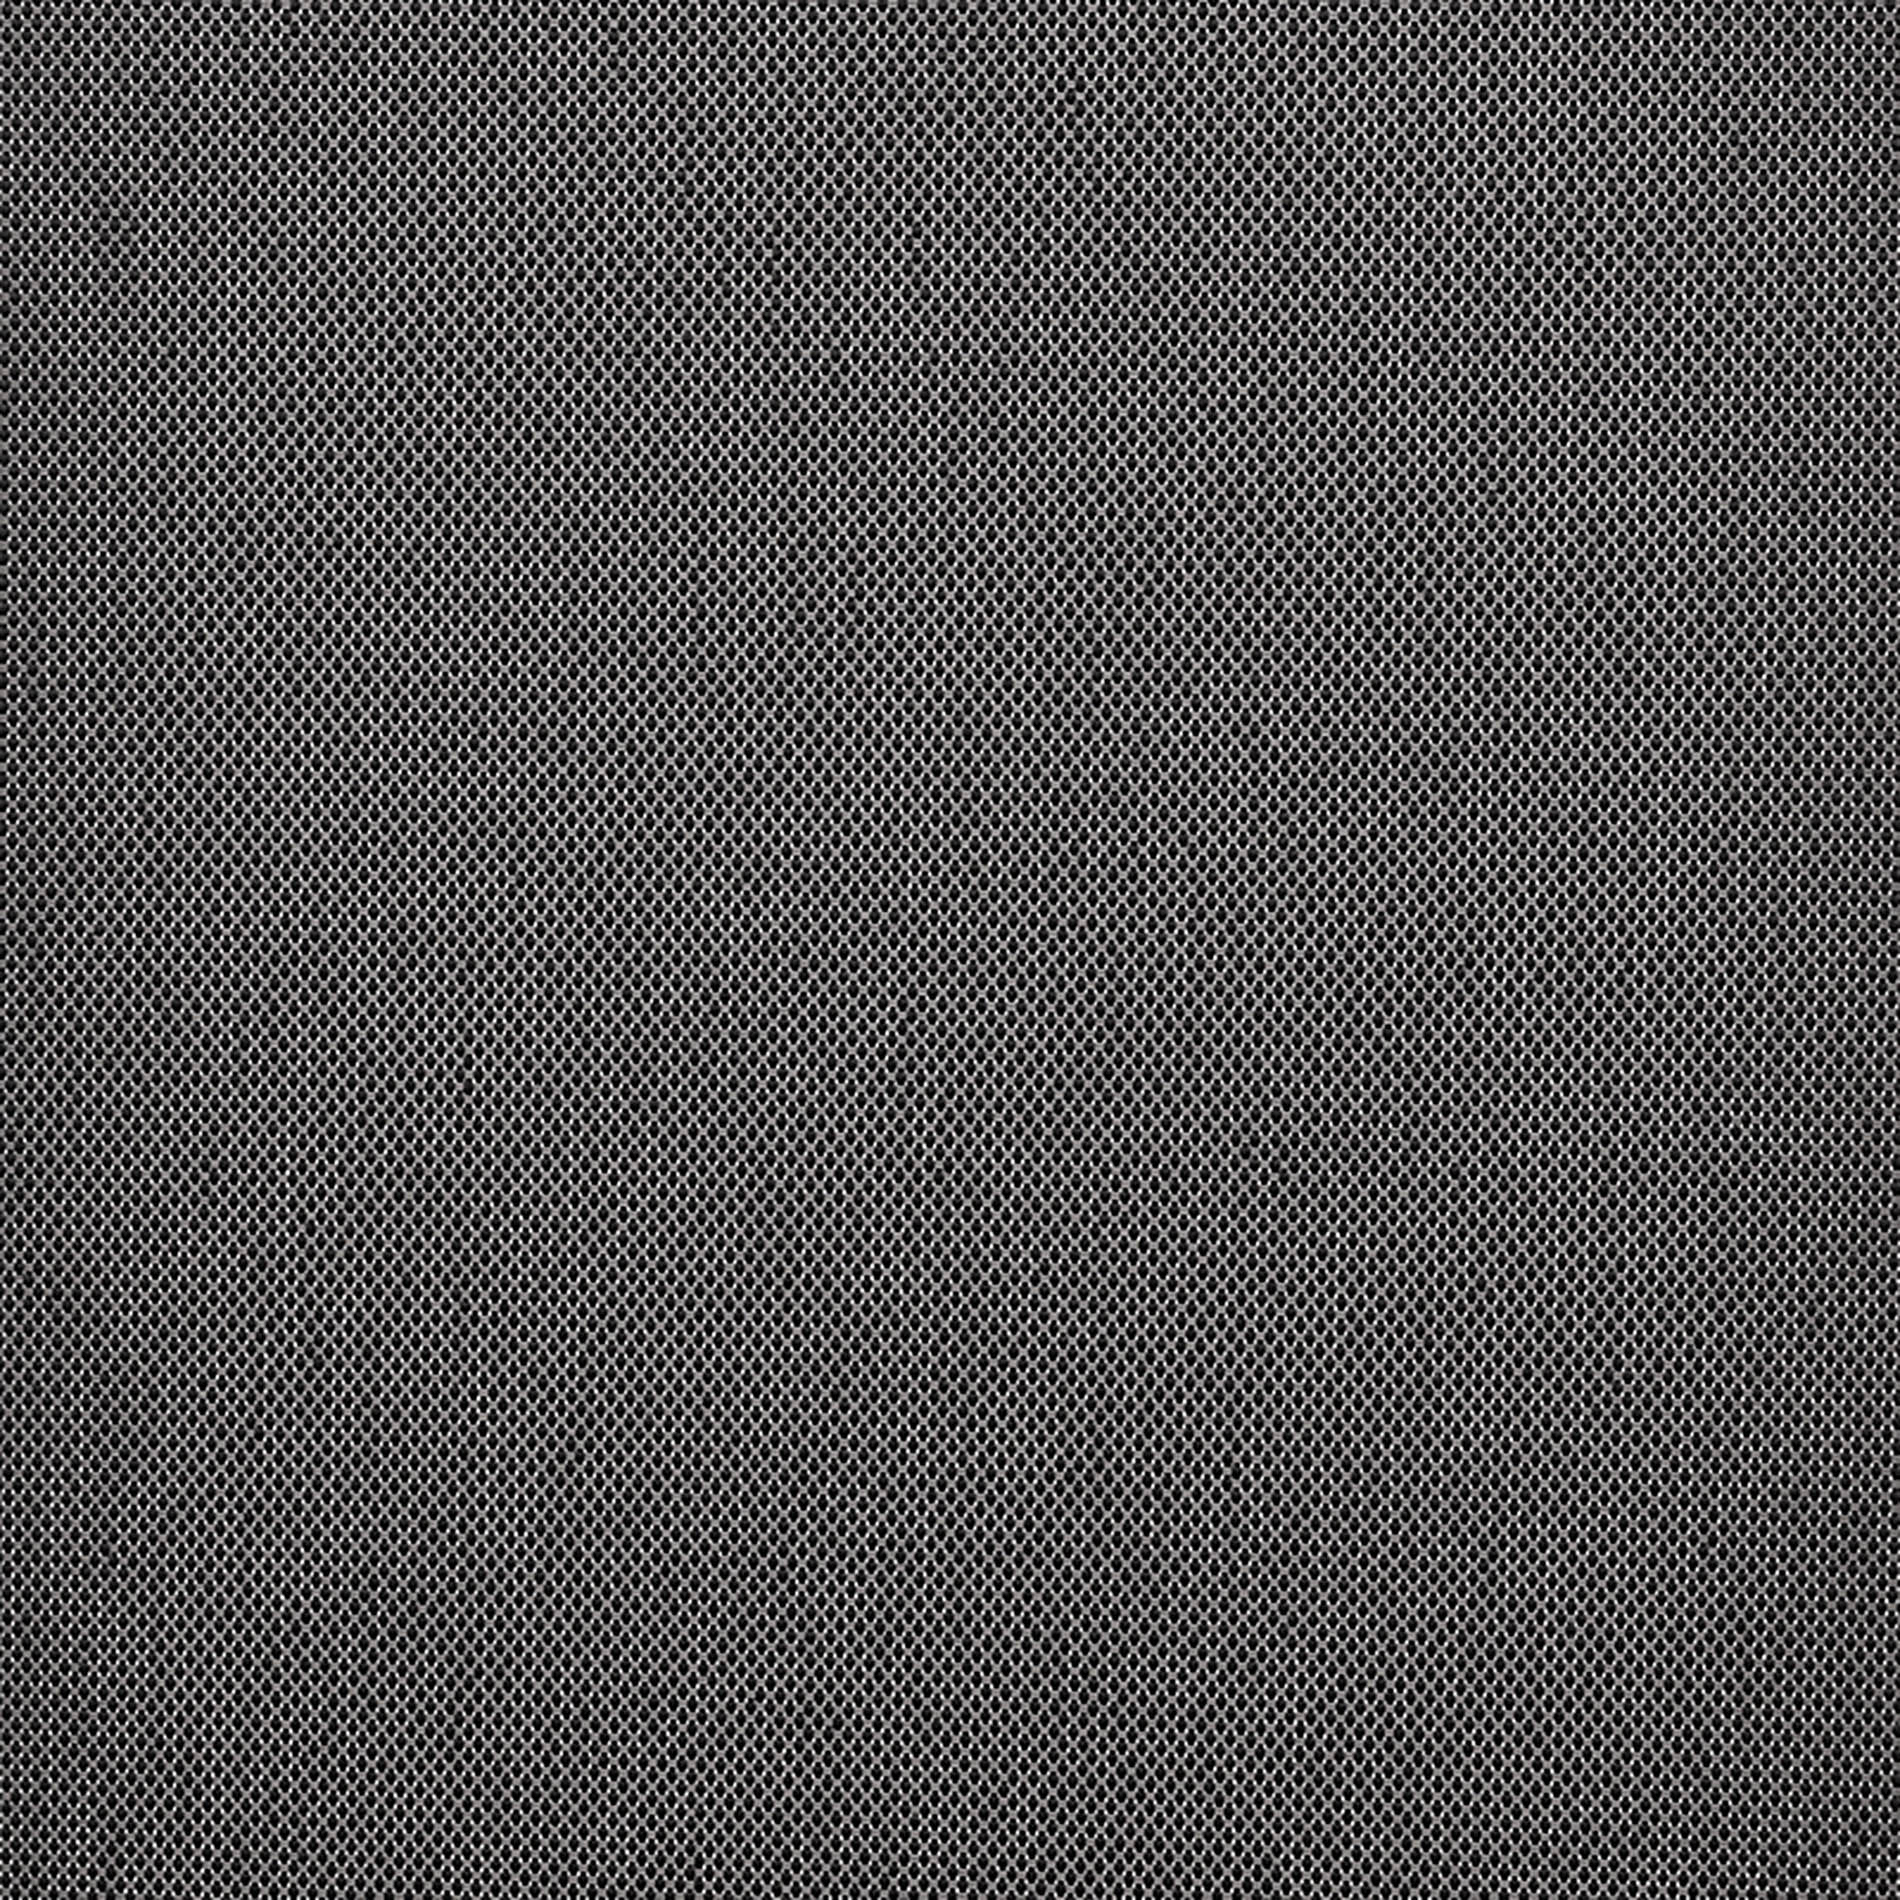 Altex - Fabric - ARGON_3 - Charcoal/Grey - ARGON_304